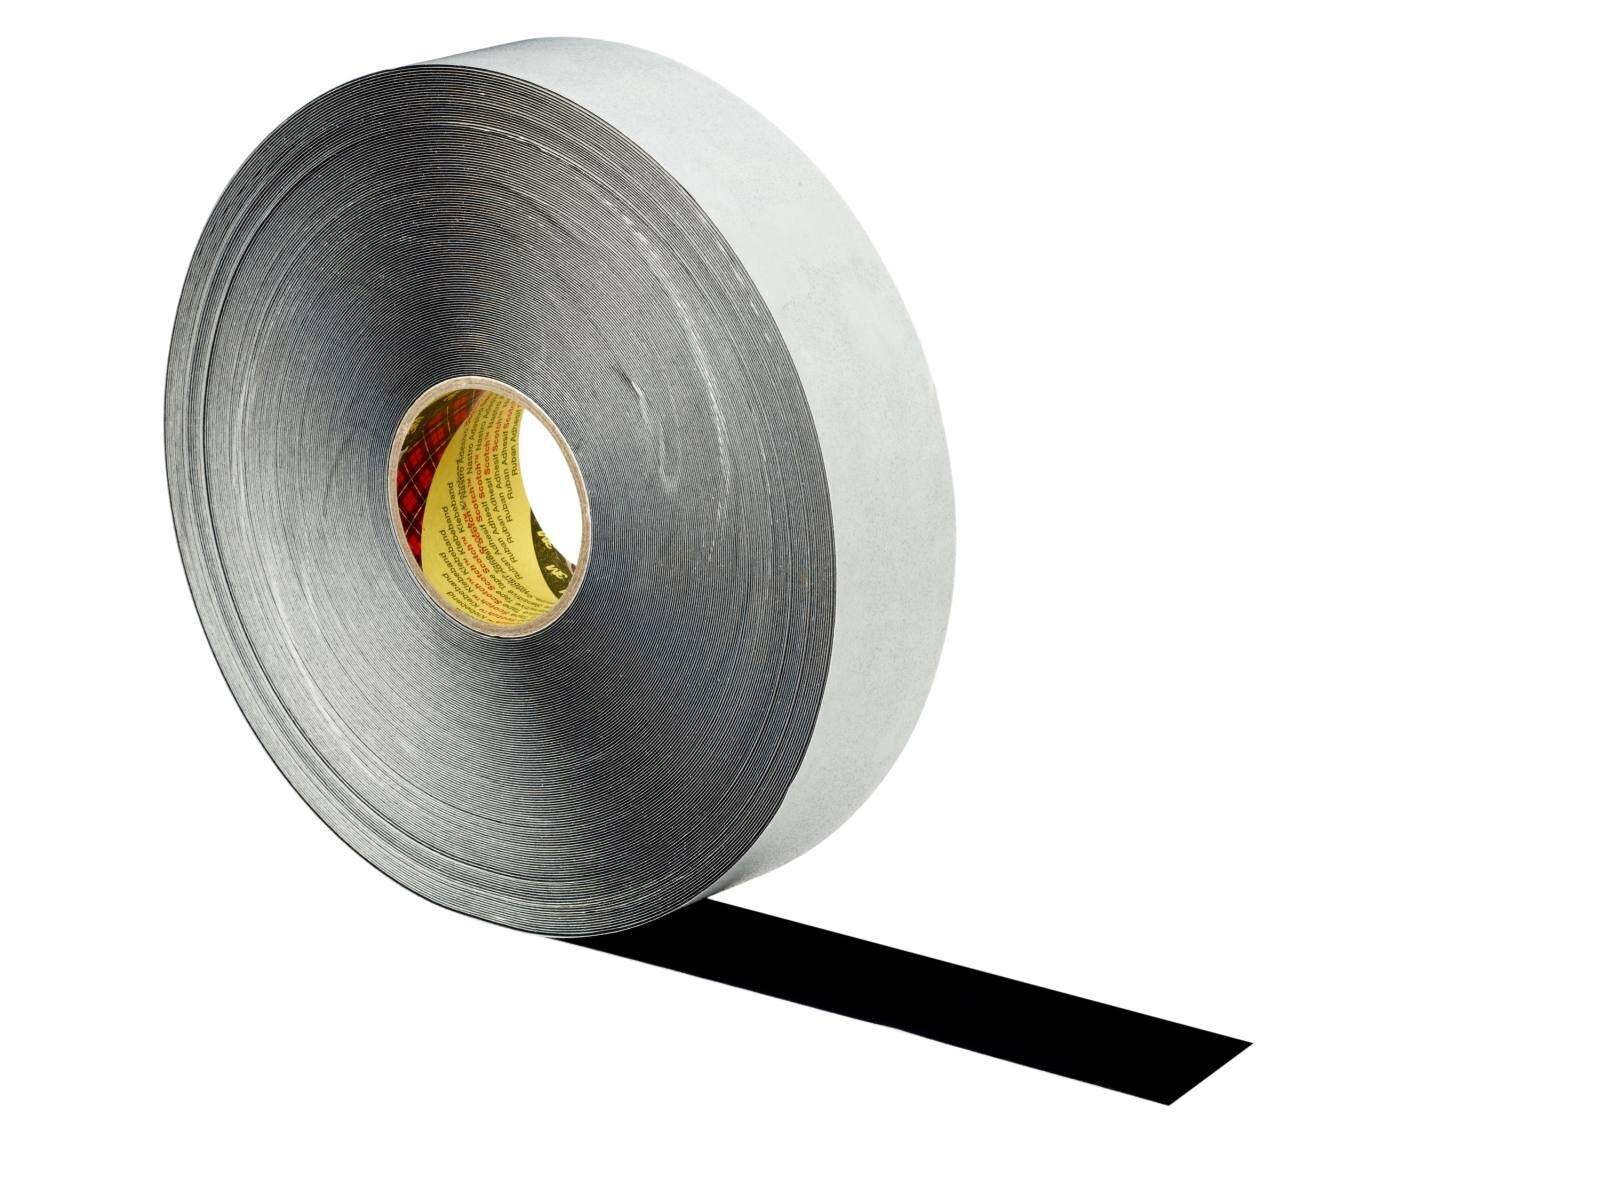 nastro adesivo 3M in poliestere floccato in poliuretano 8581, nero, 50 mm x 20 m, 0,8 mm